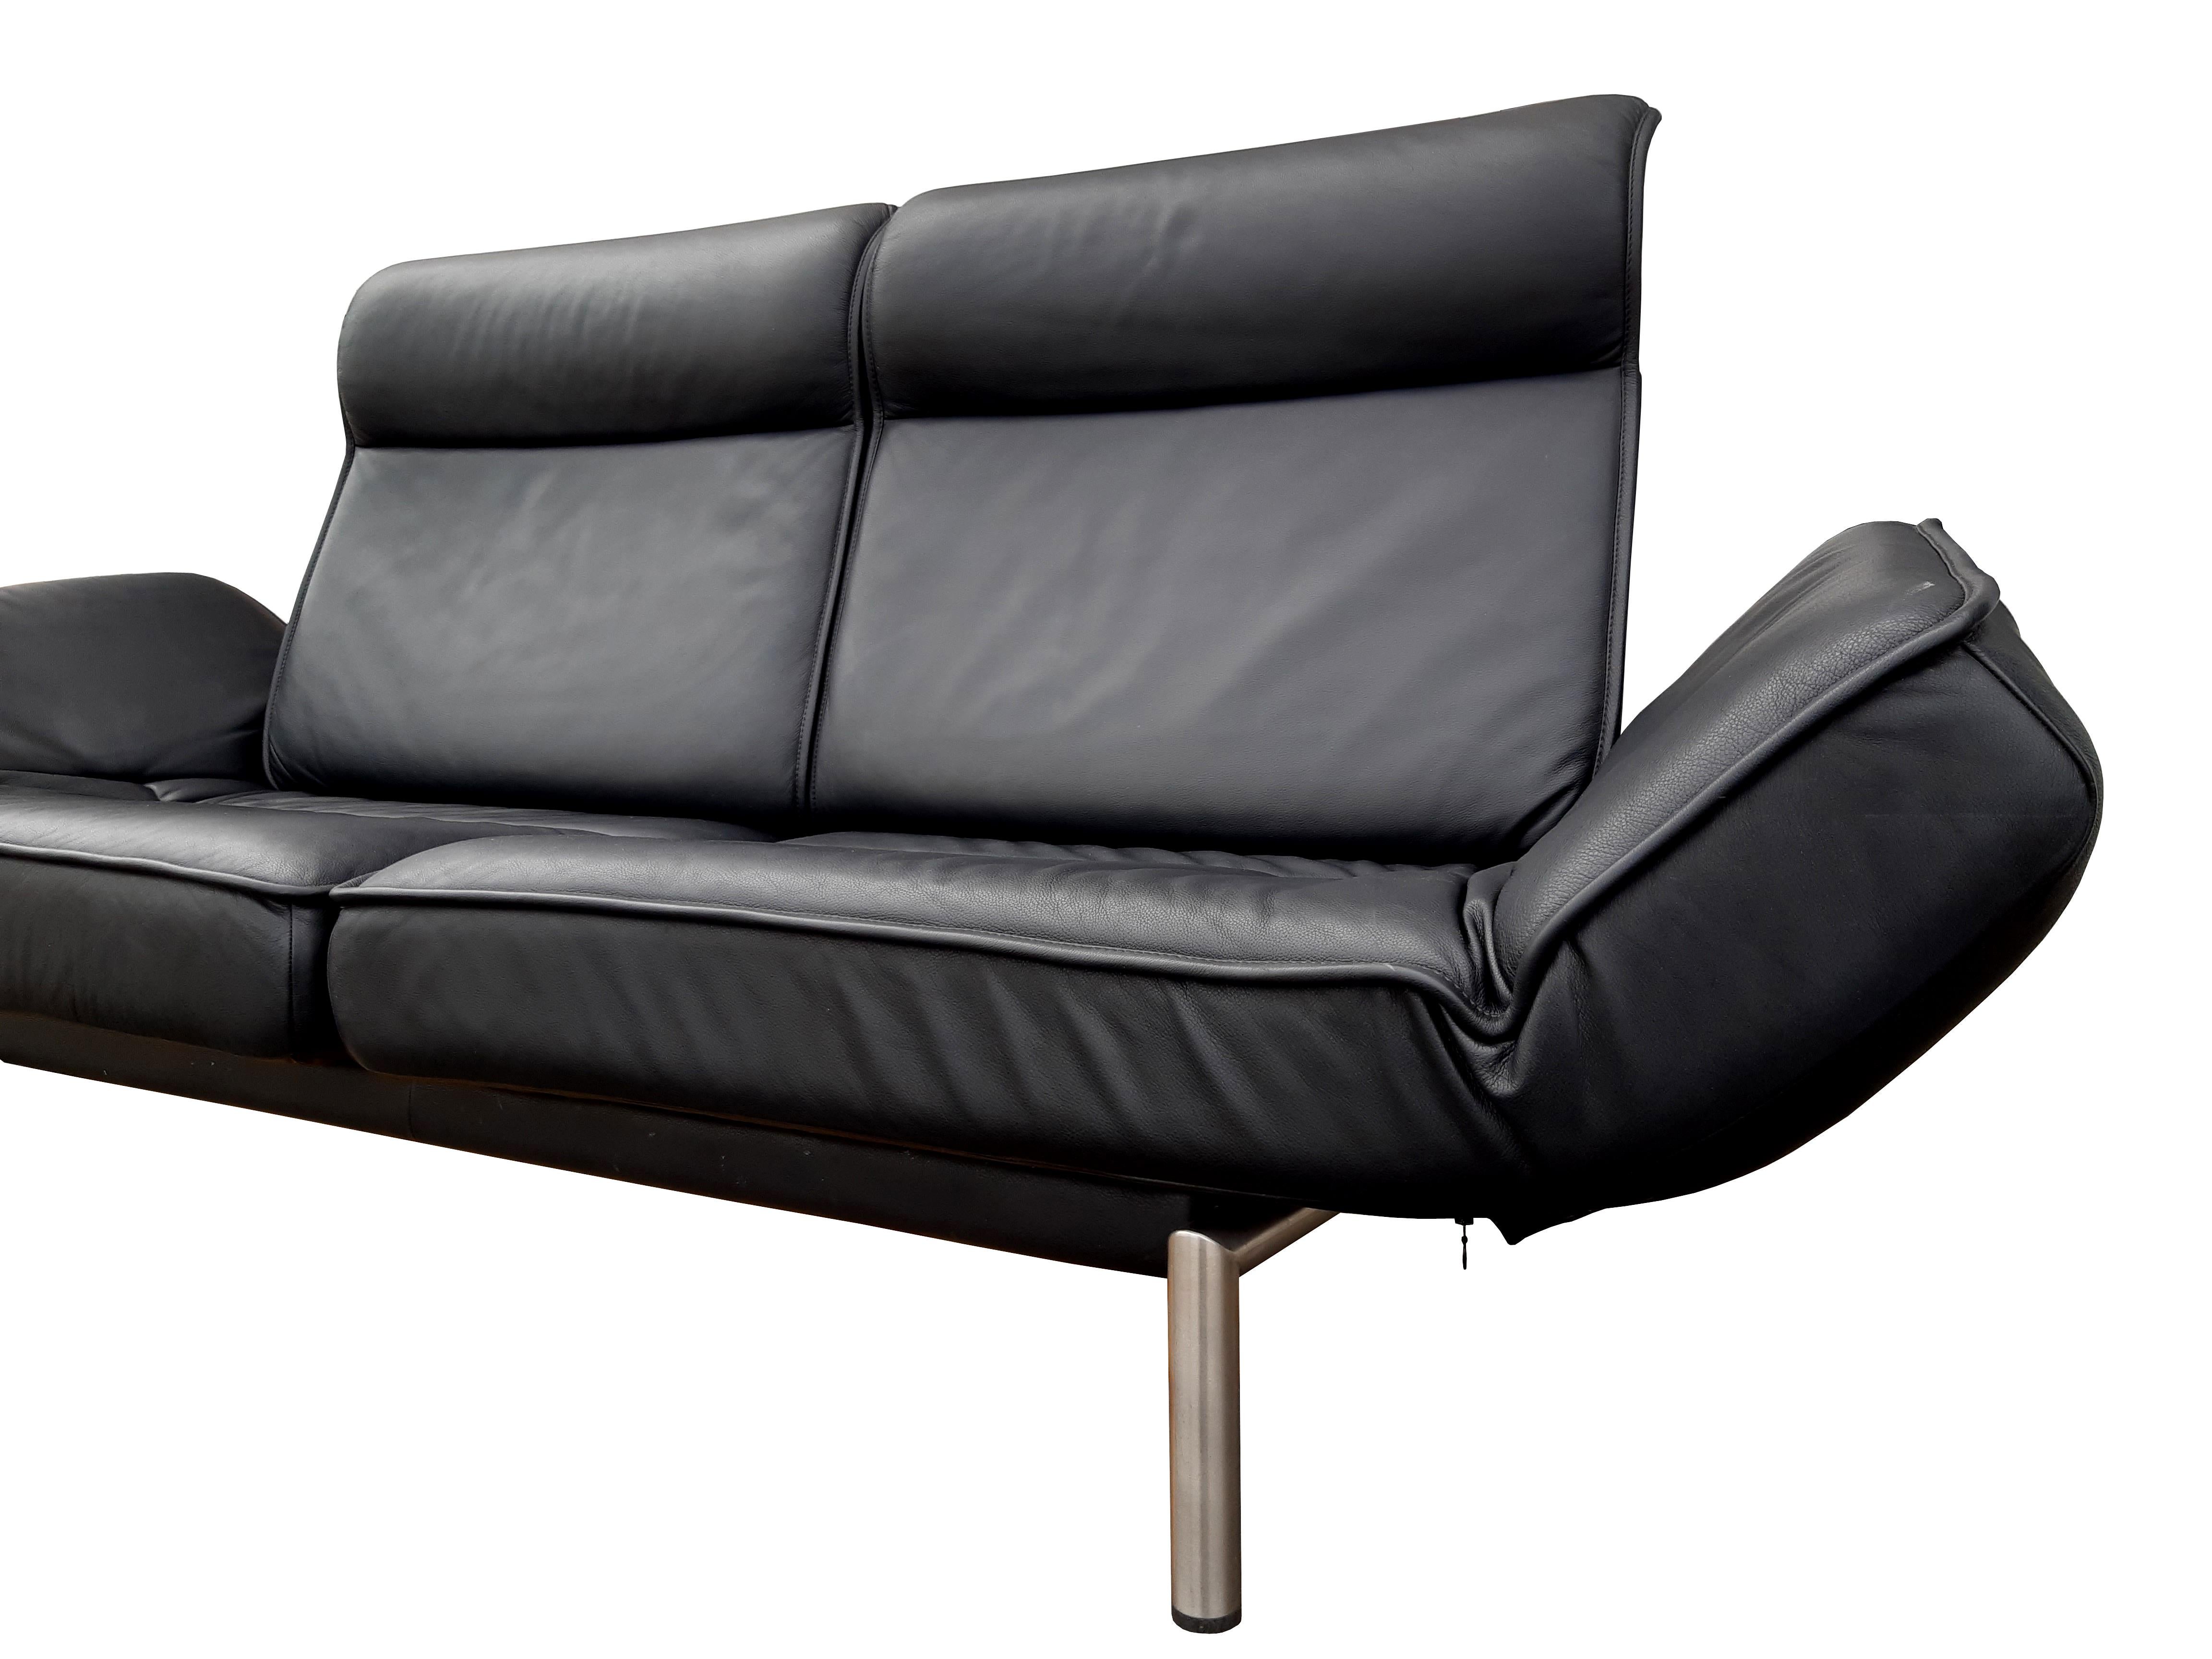 Sofa DE SEDE DS-450 gedrechselt

Gestaltung: Thomas Althaus

Das Gestell besteht aus einer Metallgrundkonstruktion aus gebürsteten Edelstahlrohren, die Sitze und Armlehnen aus einem tragenden Komfort-Schaumkern mit Polsterwatteauflage.

Die